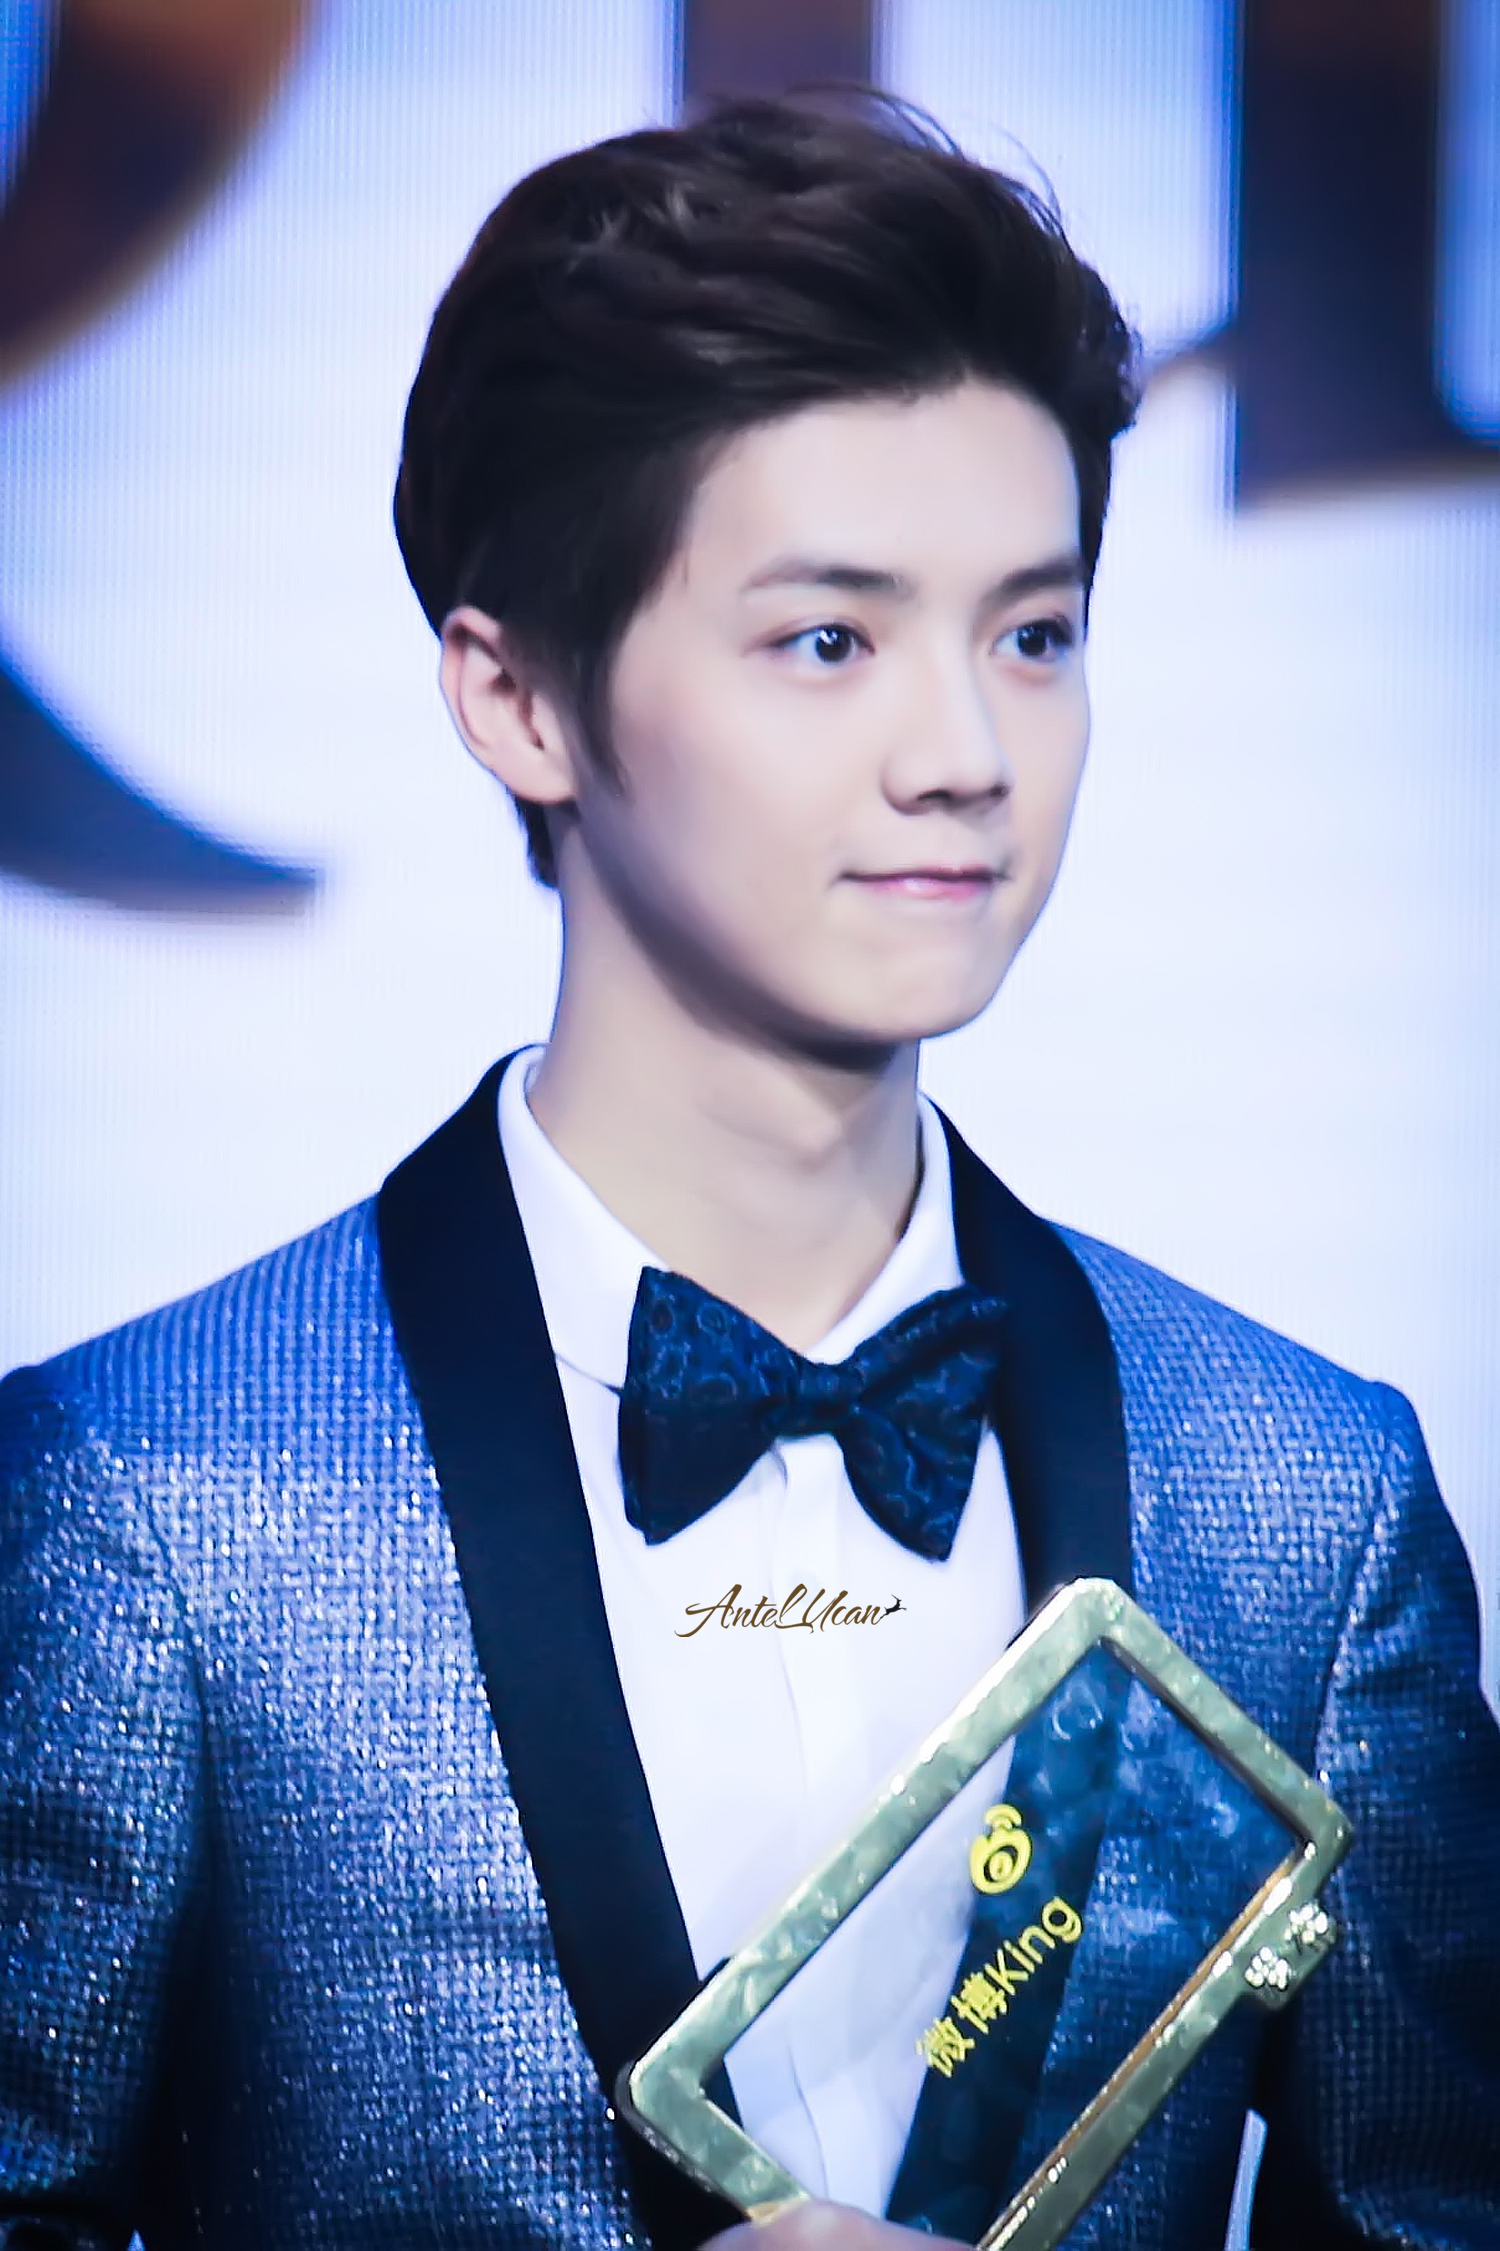 [FANTAKEN] 150115 2014 Weibo Awards Night [100P] E9c9041djw1eobb3xgeuzj215o1qjqv6